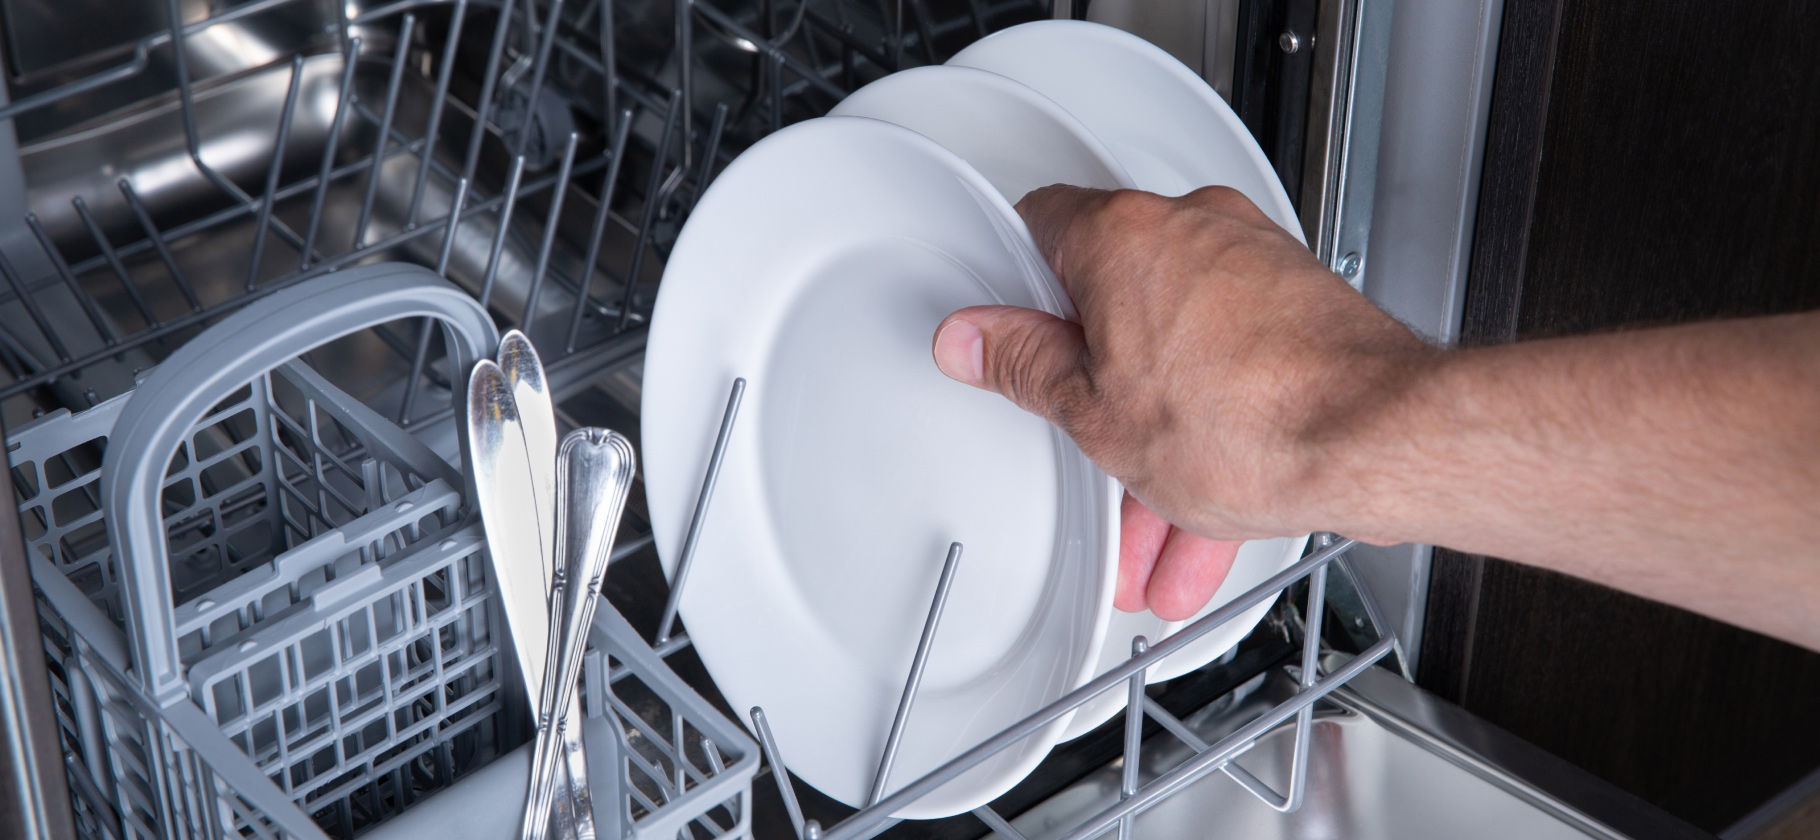 «Невозможно отмыть посуду руками так чисто»: 6 историй, которые убедят купить посудомойку